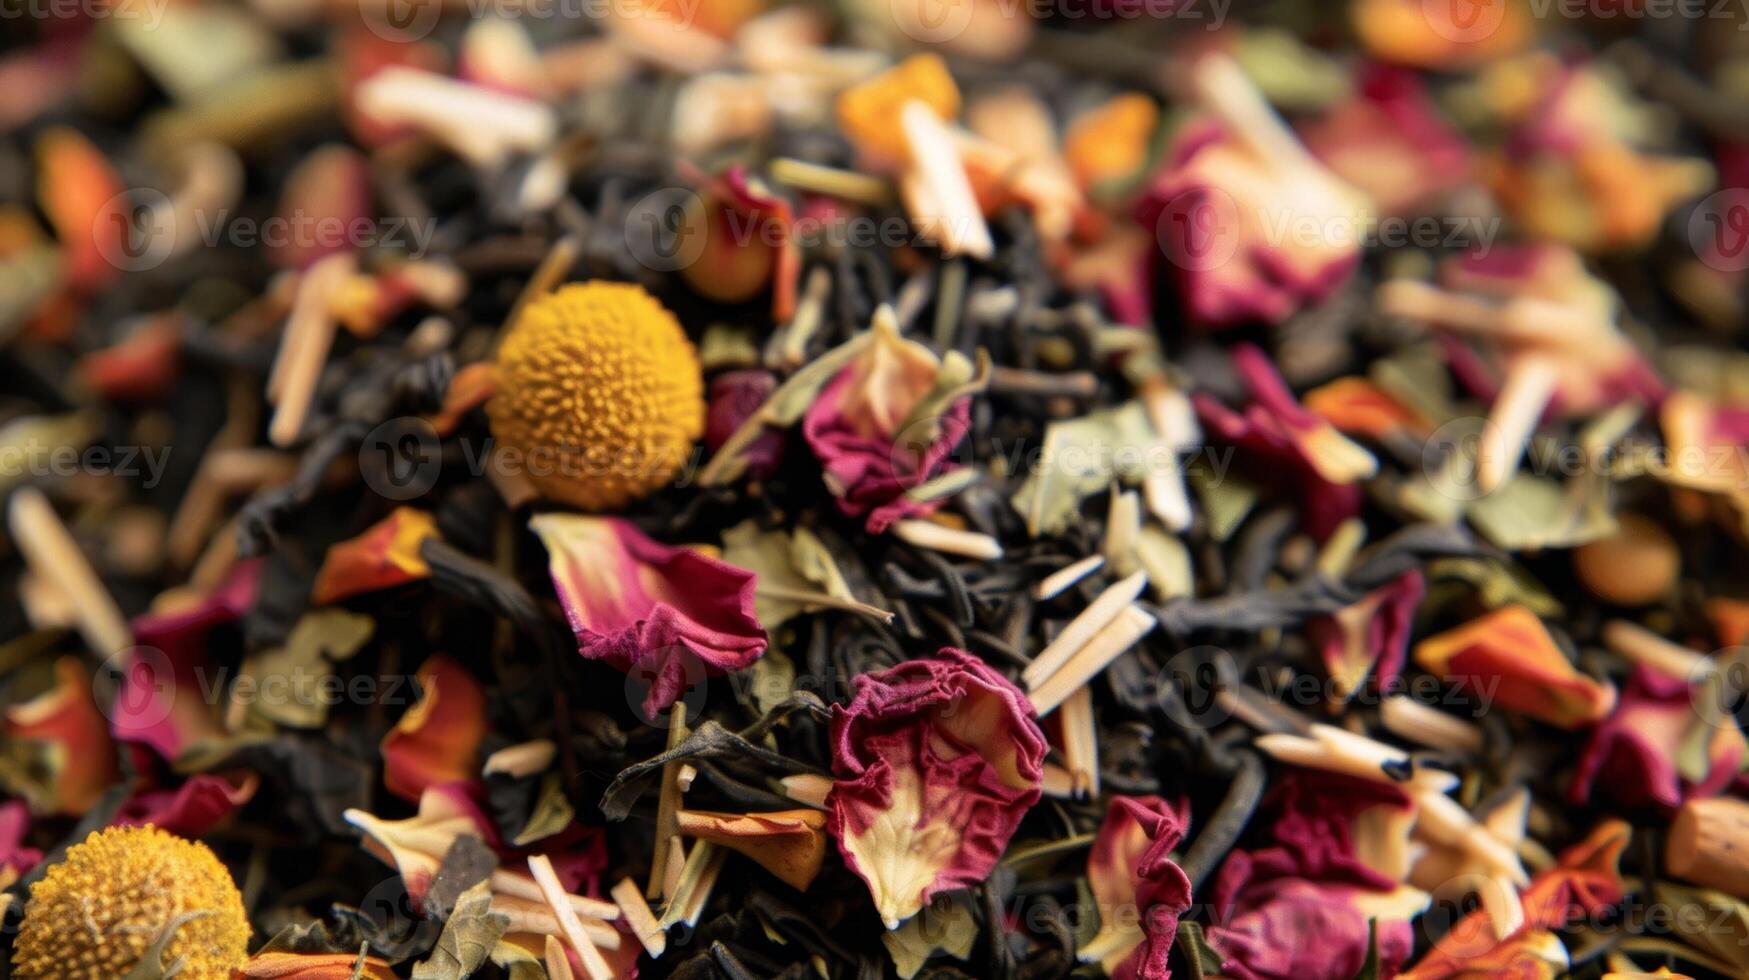 une apaisant camomille thé infusé avec le délicat les saveurs de noix de coco et hibiscus photo